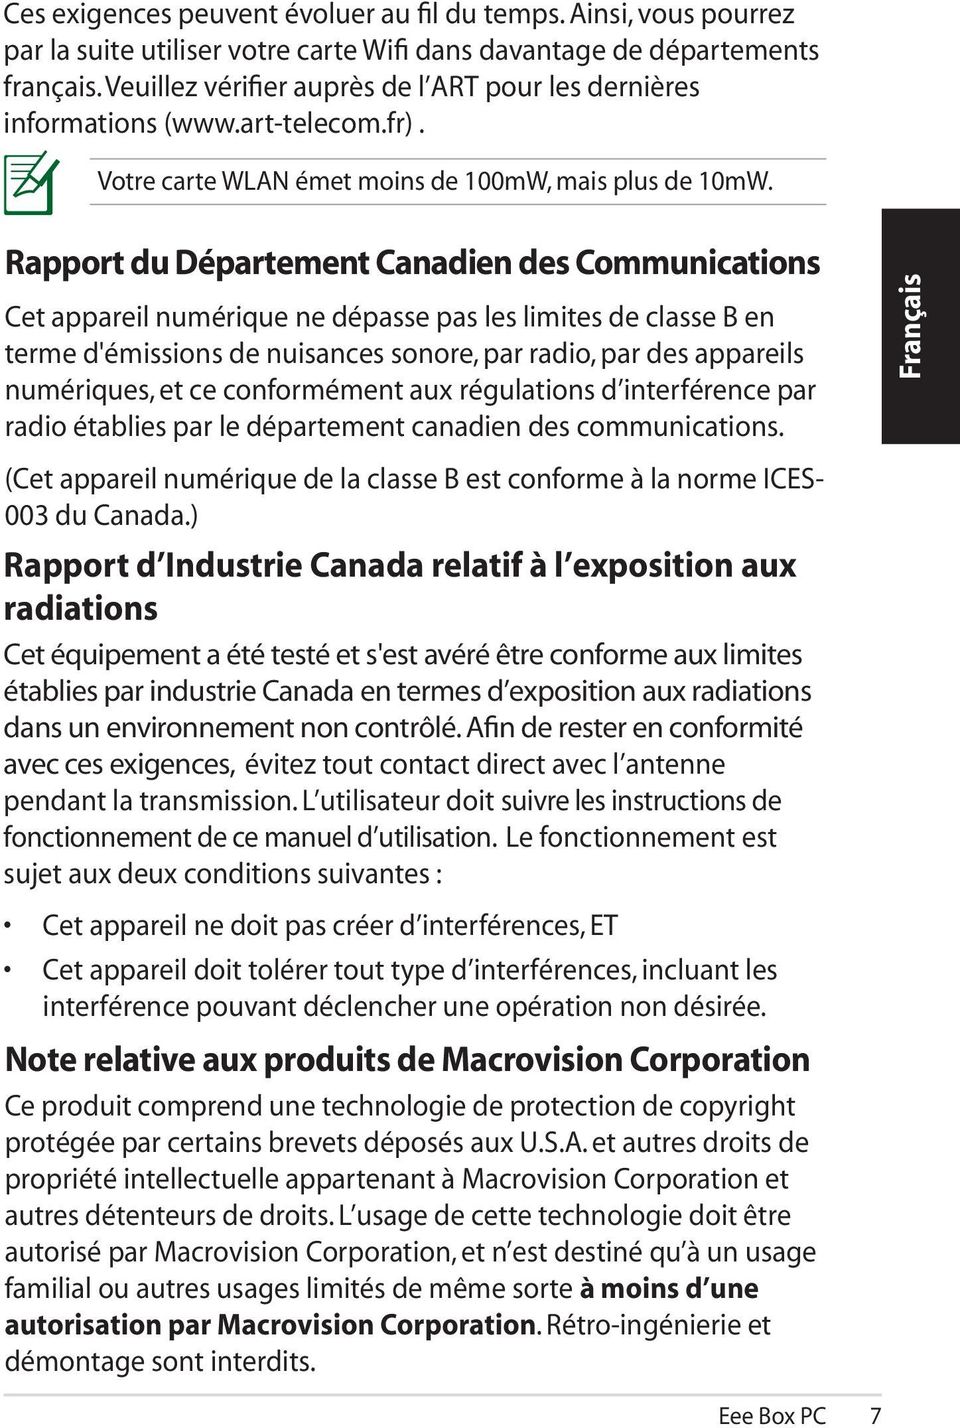 Rapport du Département Canadien des Communications Cet appareil numérique ne dépasse pas les limites de classe B en terme d'émissions de nuisances sonore, par radio, par des appareils numériques, et